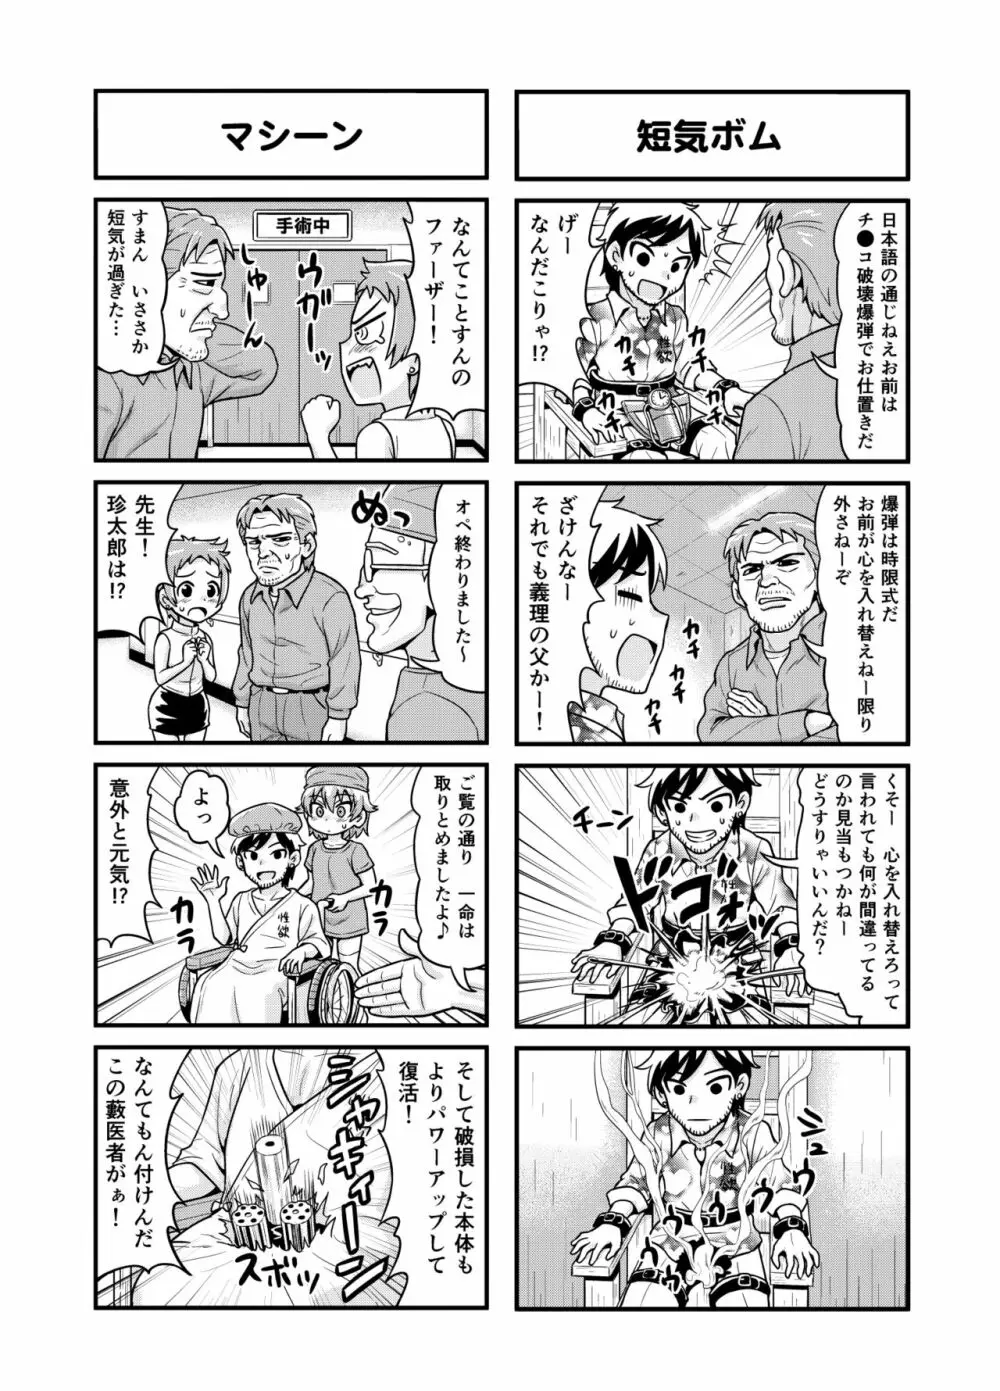 のんきBOY 1-38 141ページ